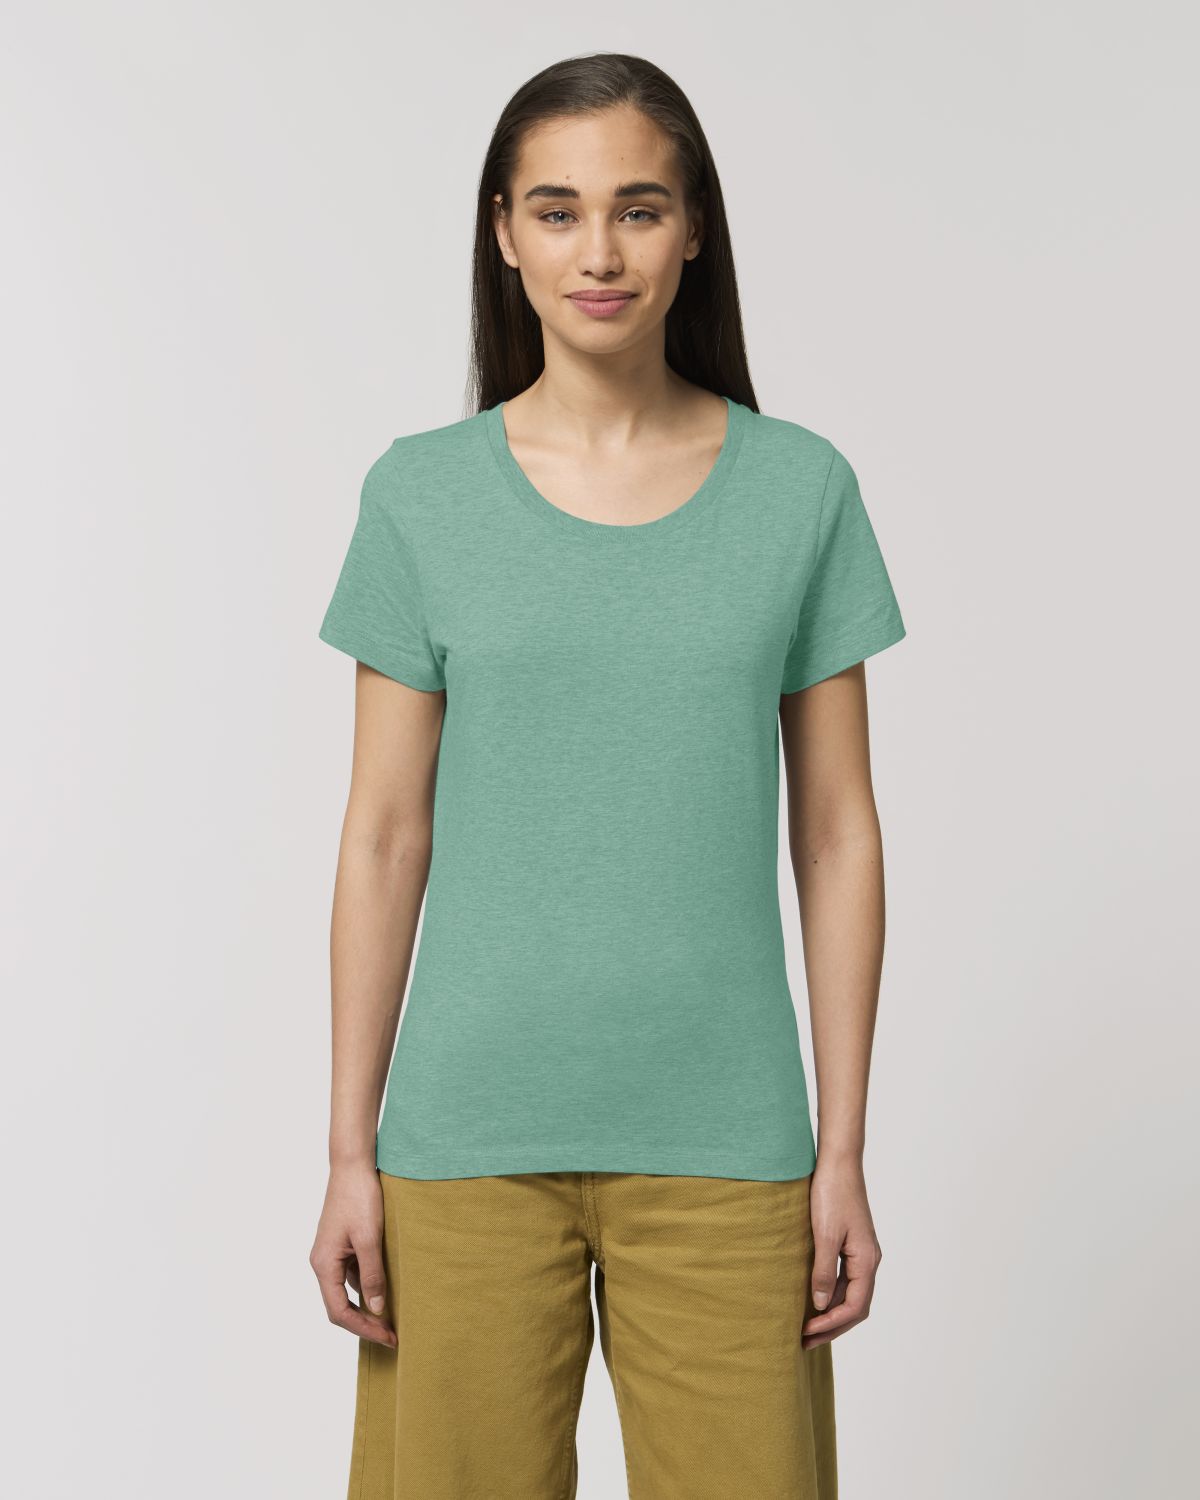 Drei Zinnen  - Ladies Organic Shirt (meliert)